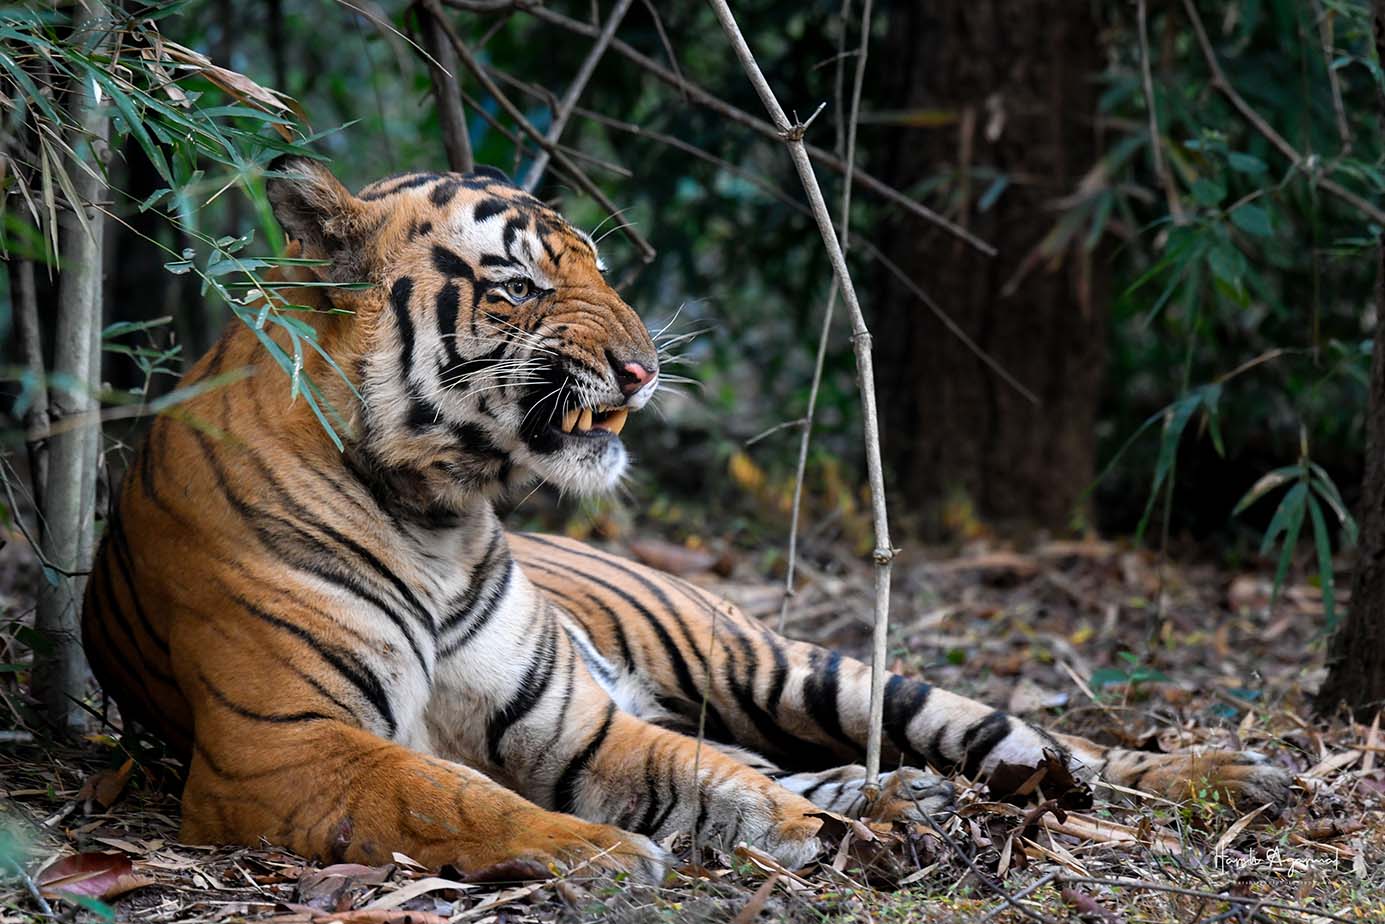 Tiger safari India | wildlife Tour India | wildlife safari India | Wildlife Photography Tour India